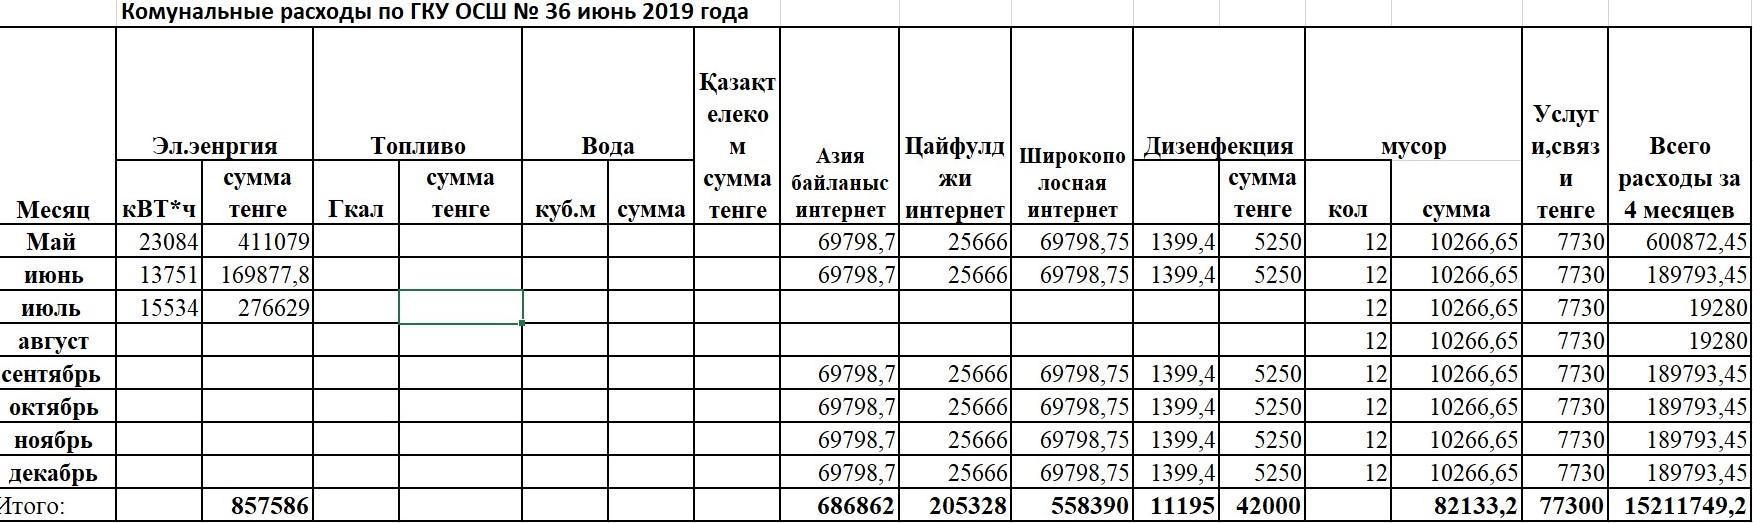 коммунальные  расходы по ГКУ ОСШ №36 за June 2019 года